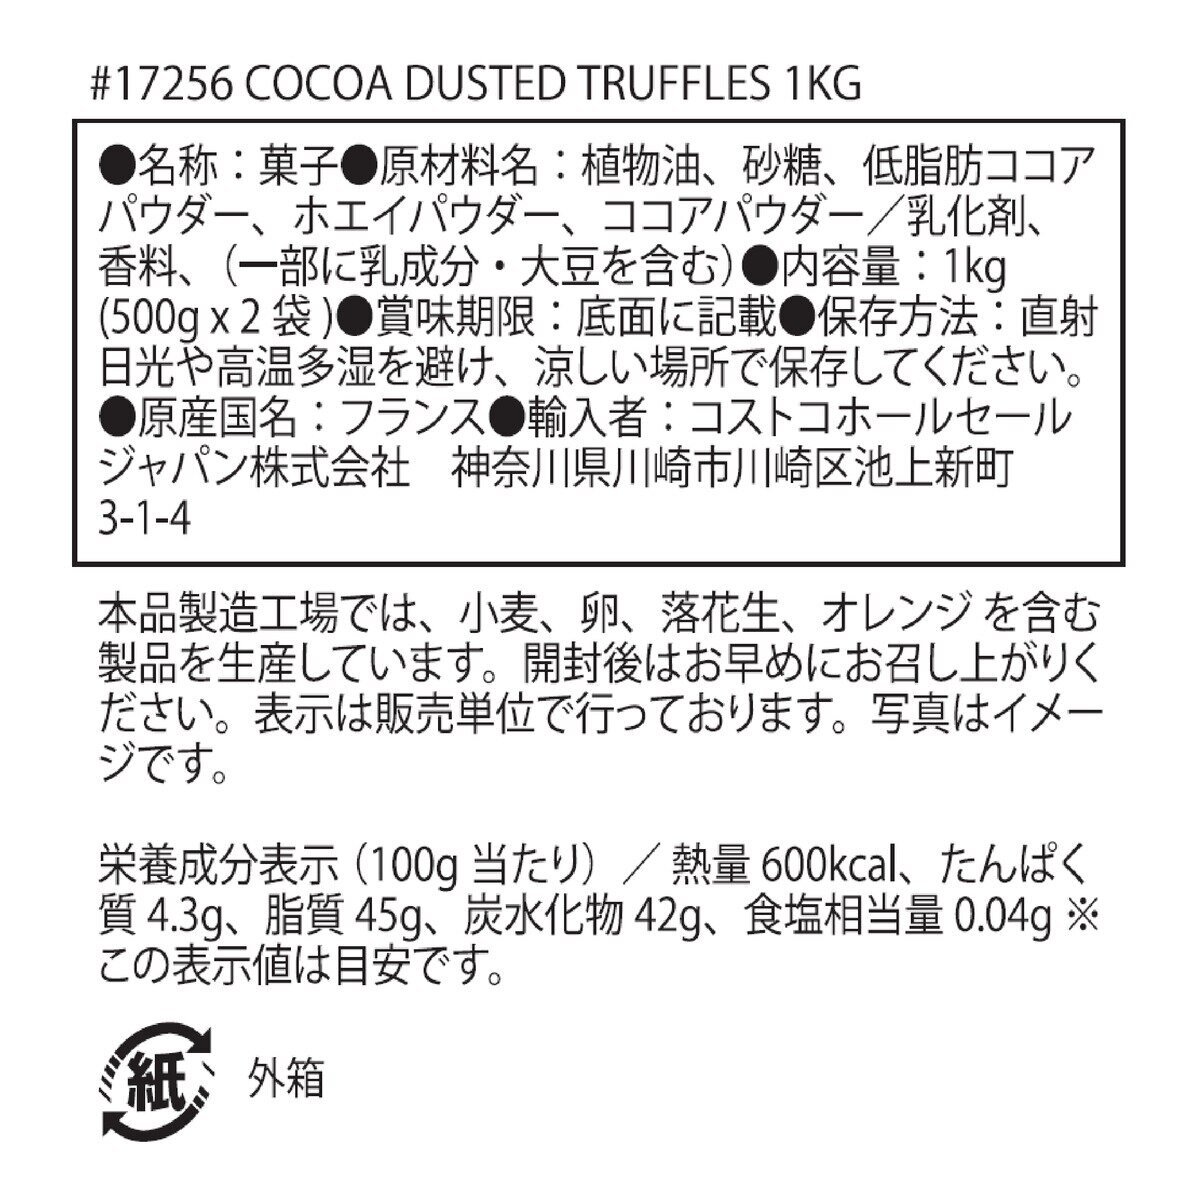 チョコモド ココアダストトリュフ 1kg | Costco Japan